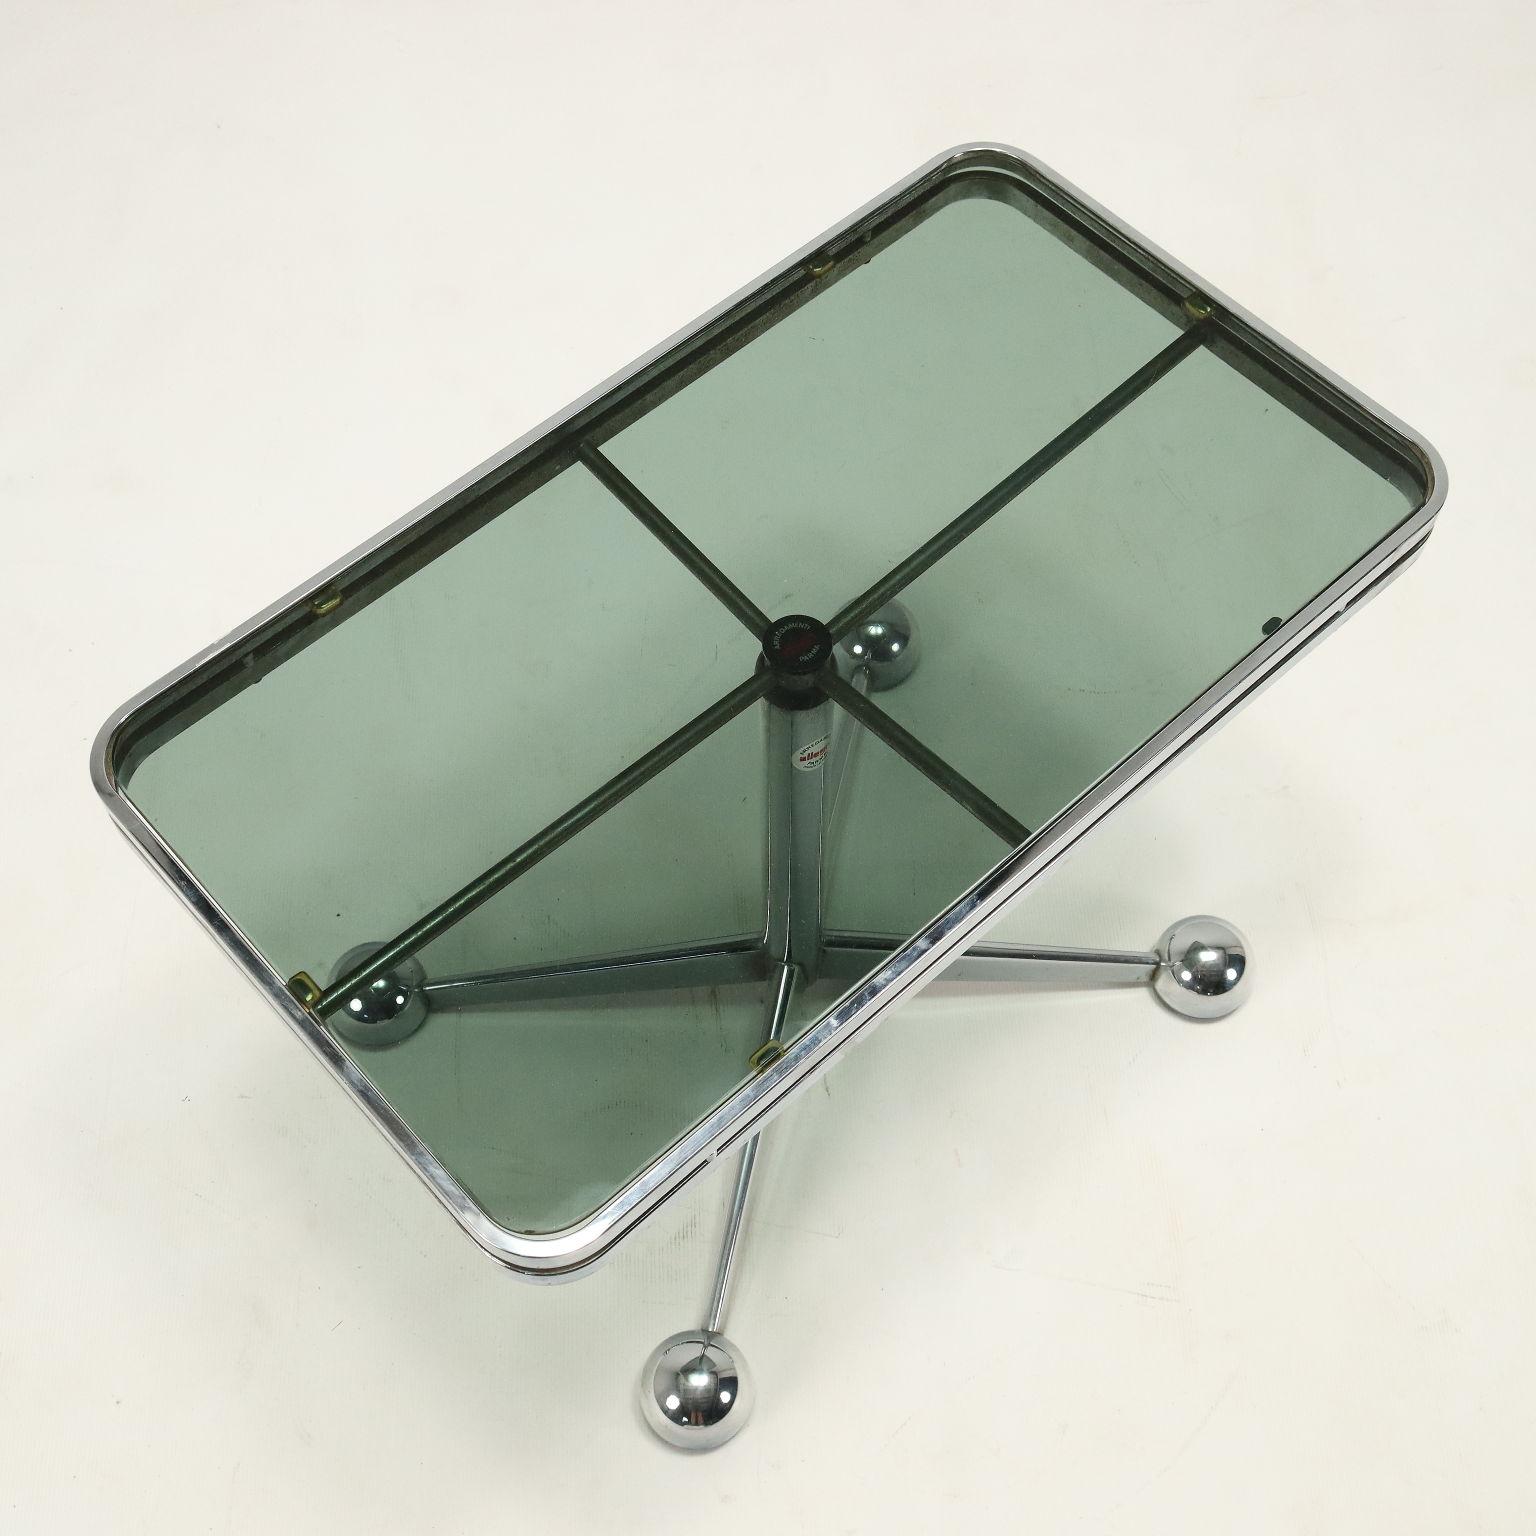 Polychromed Tavolino Space Age Anni 60-70, in vetro fumé e metallo cromato